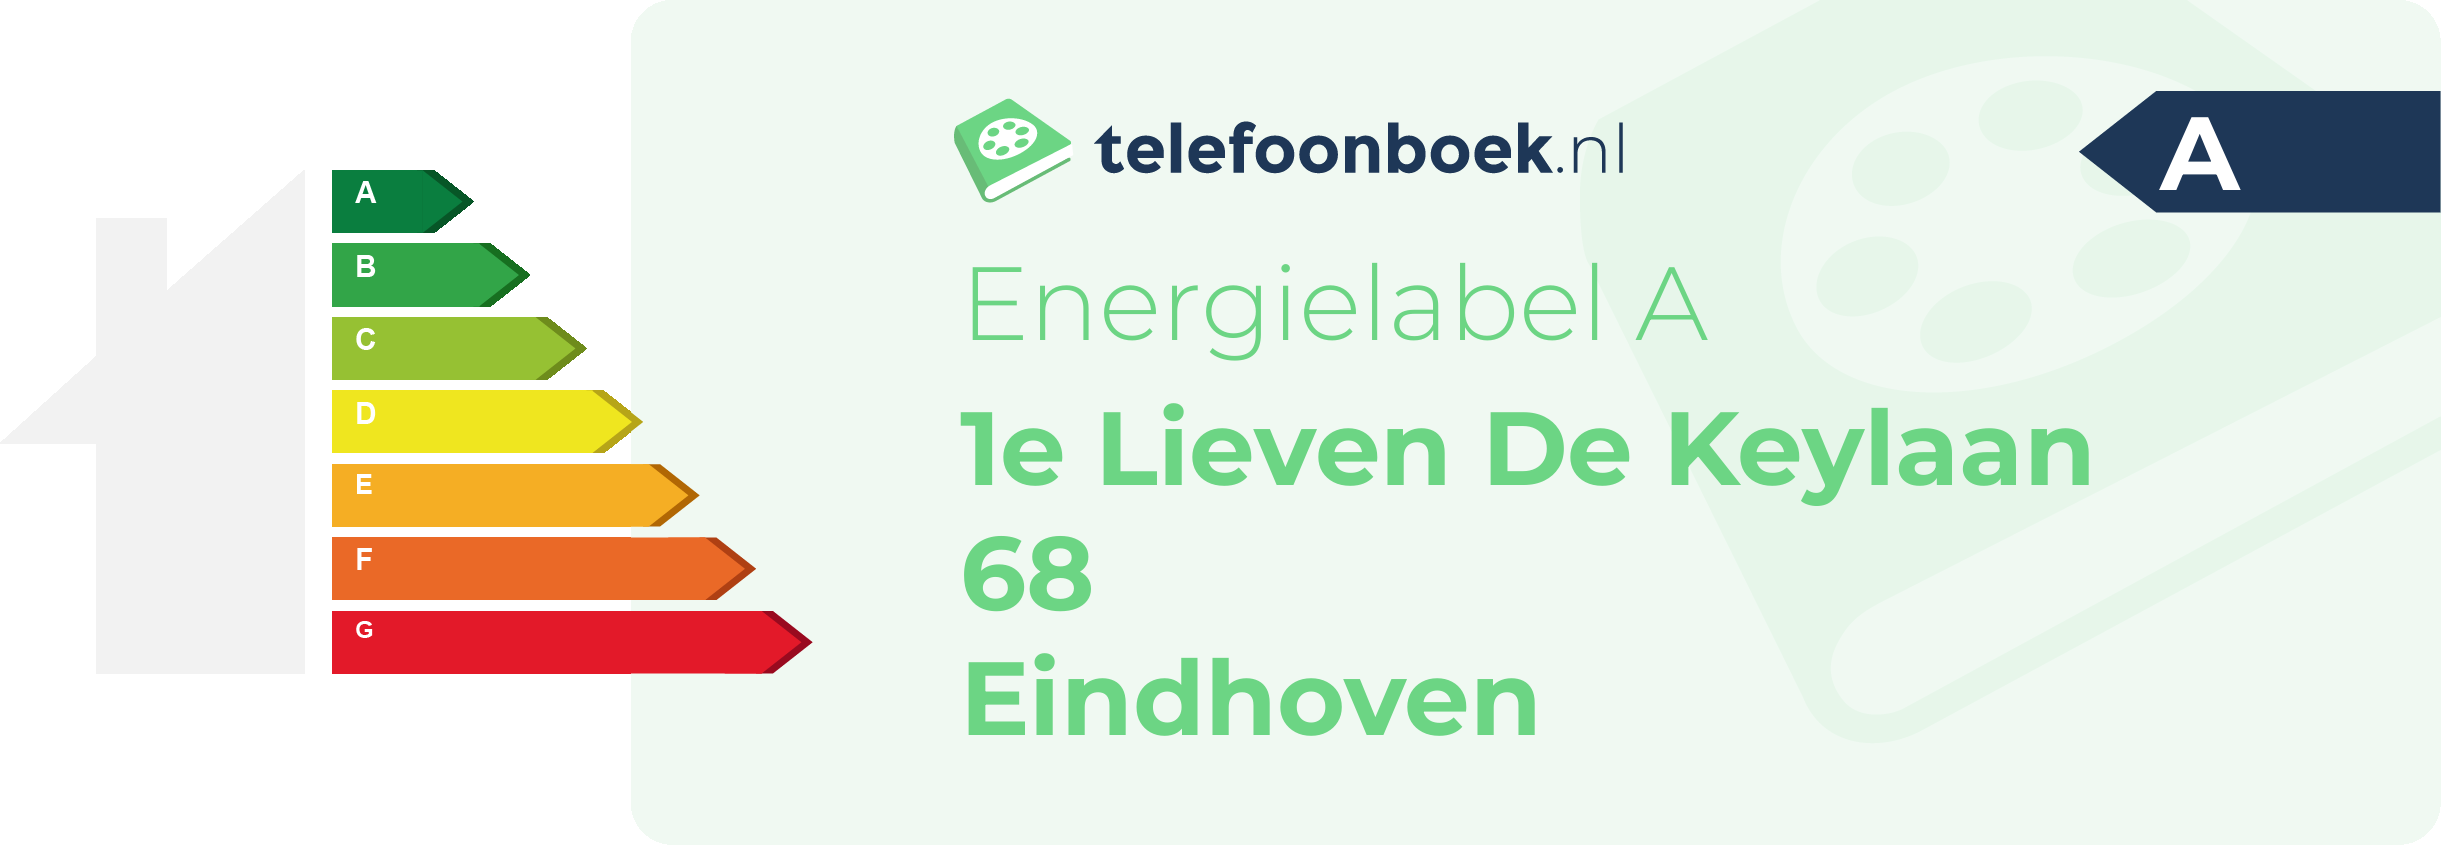 Energielabel 1e Lieven De Keylaan 68 Eindhoven